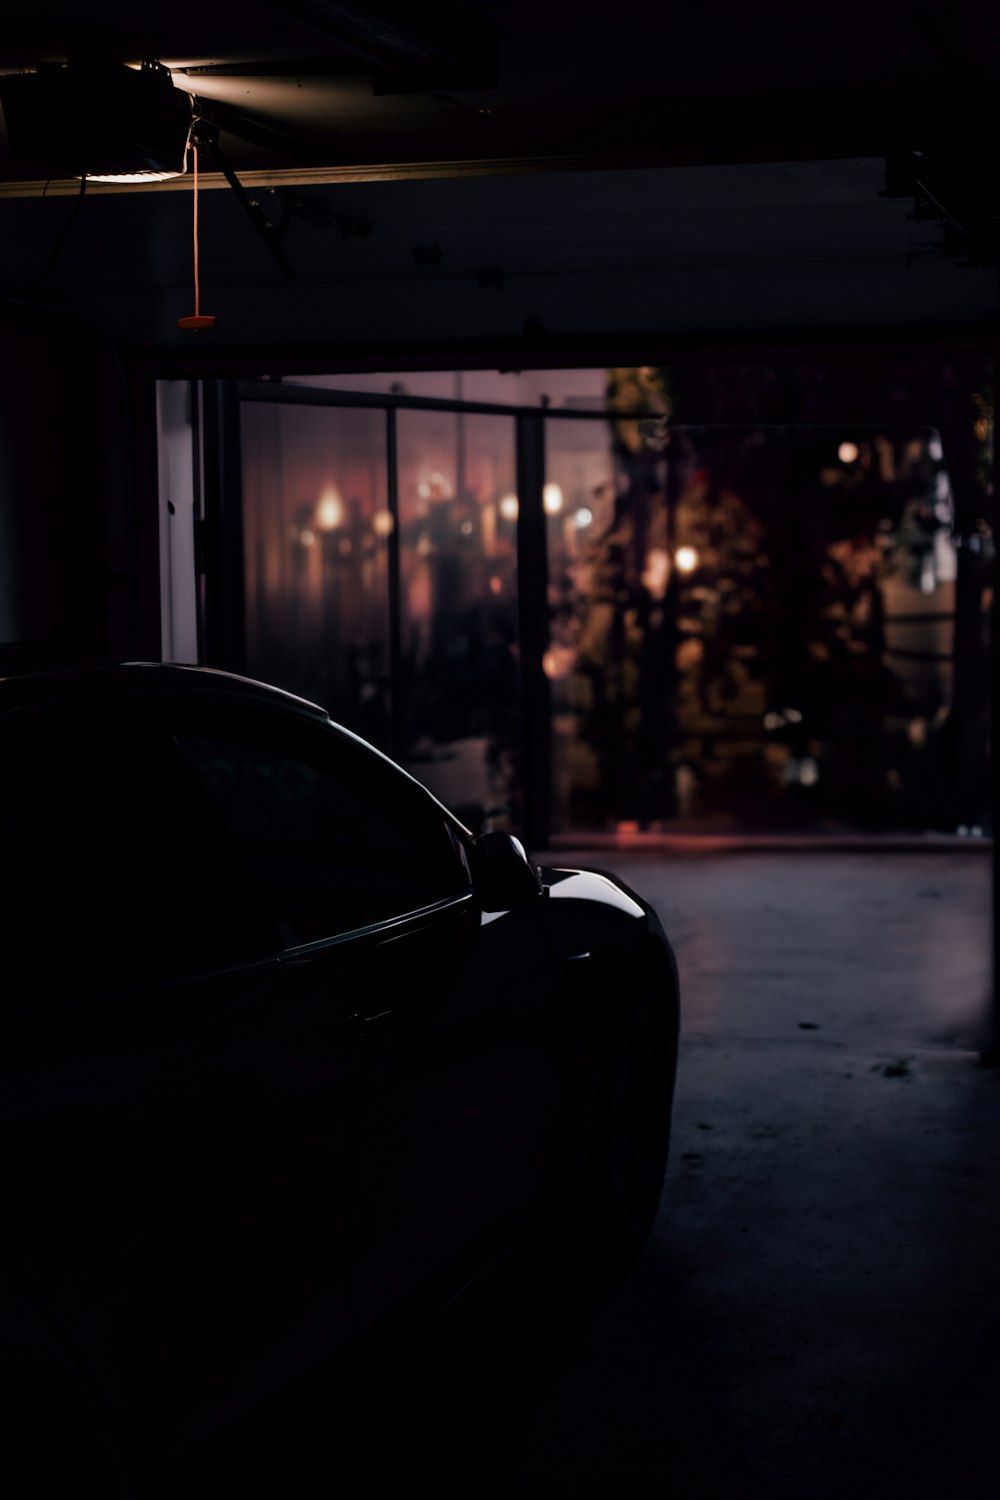 a car parked in a dark parking garage